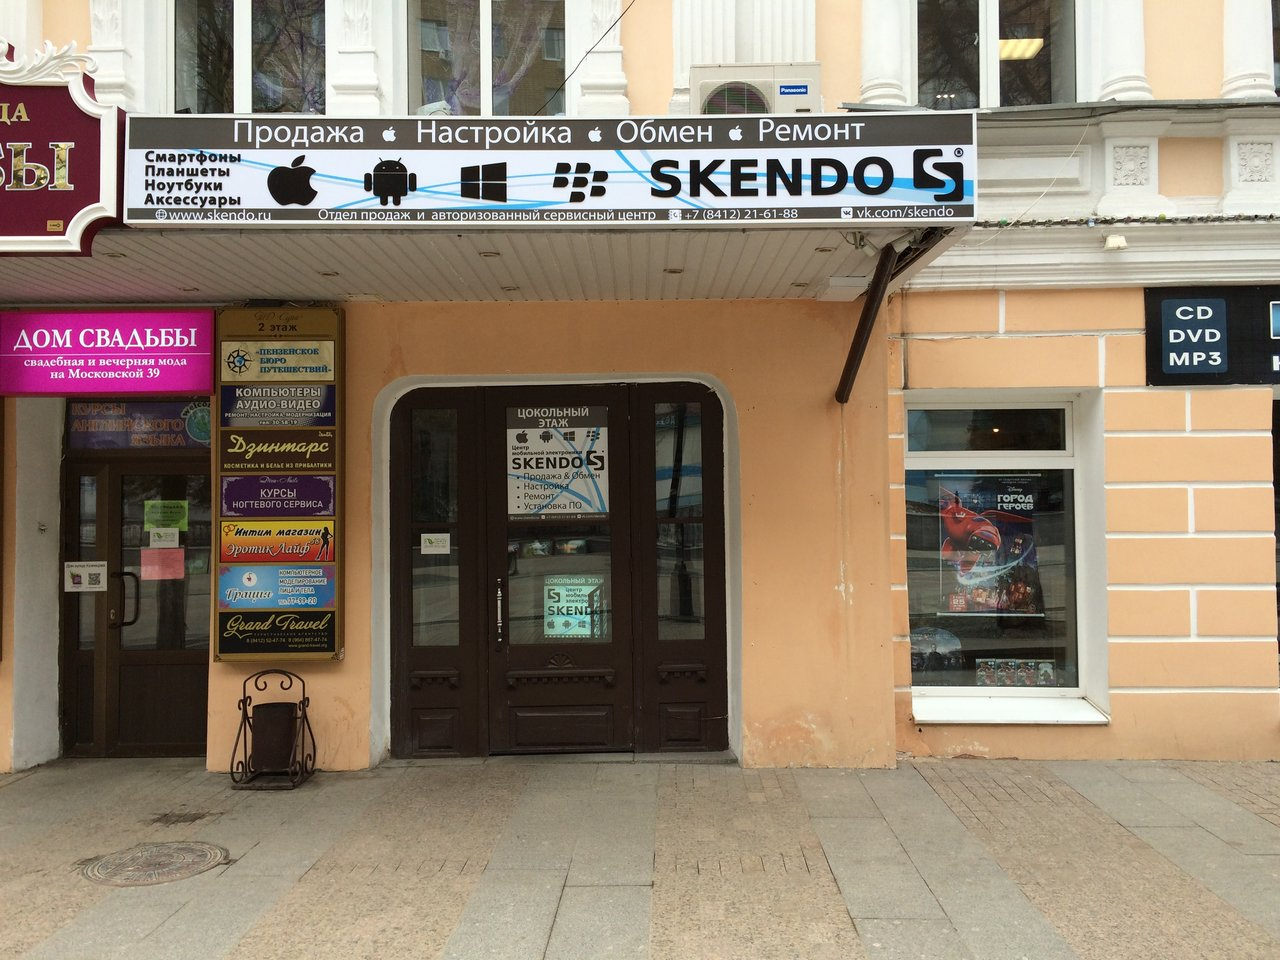 Чем отличается обменный iPhone из магазина "Skendo" от стандартного устройства?